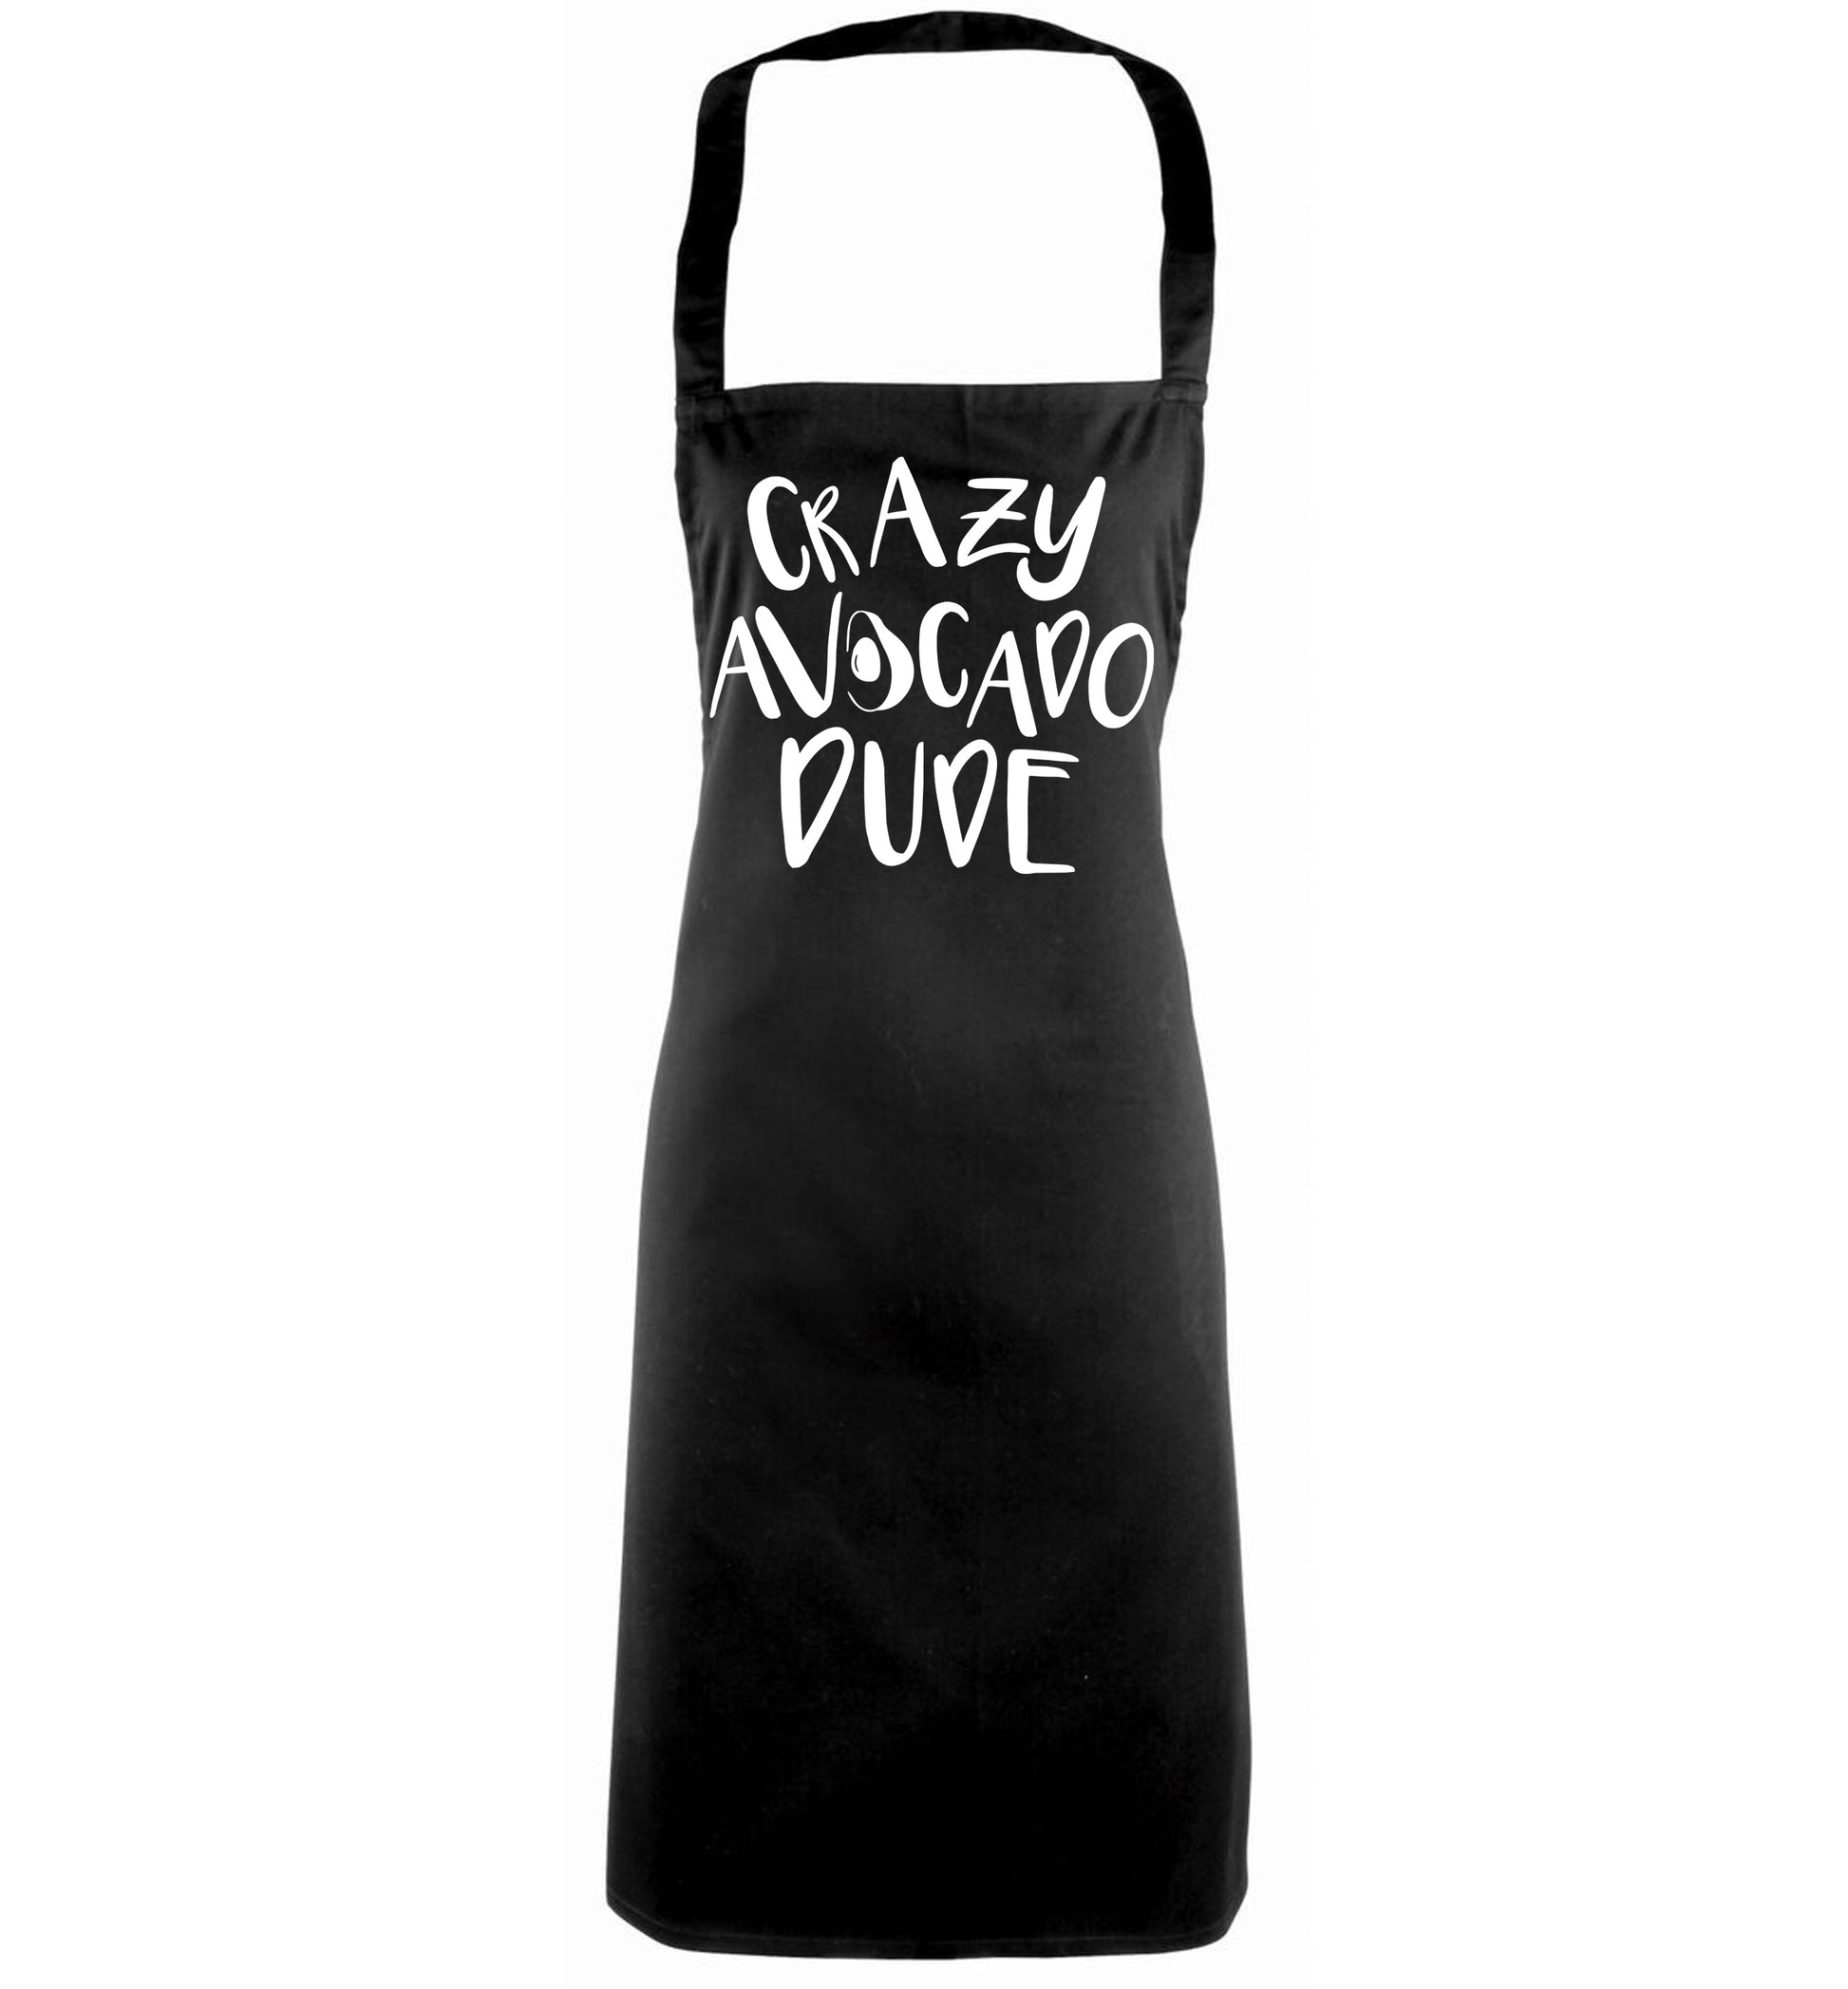 Crazy avocado dude black apron